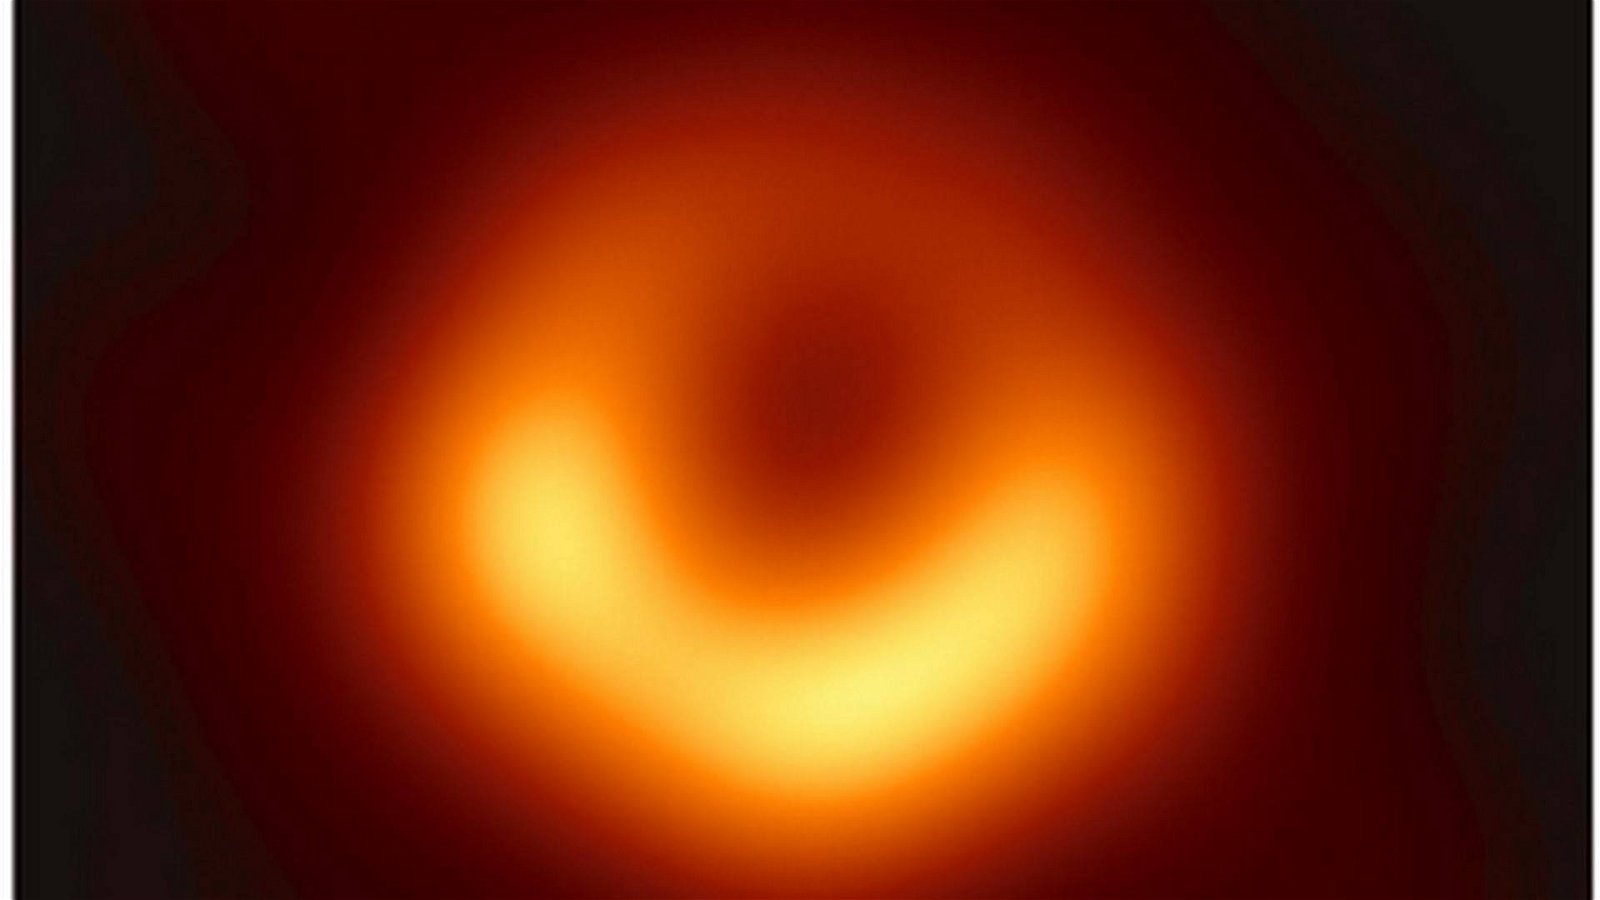 Immagine di Il buco nero M87 fotografato dall'EHT e le conseguenze sulla Fisica e sull’Astrofisica, spiegate dall'esperto